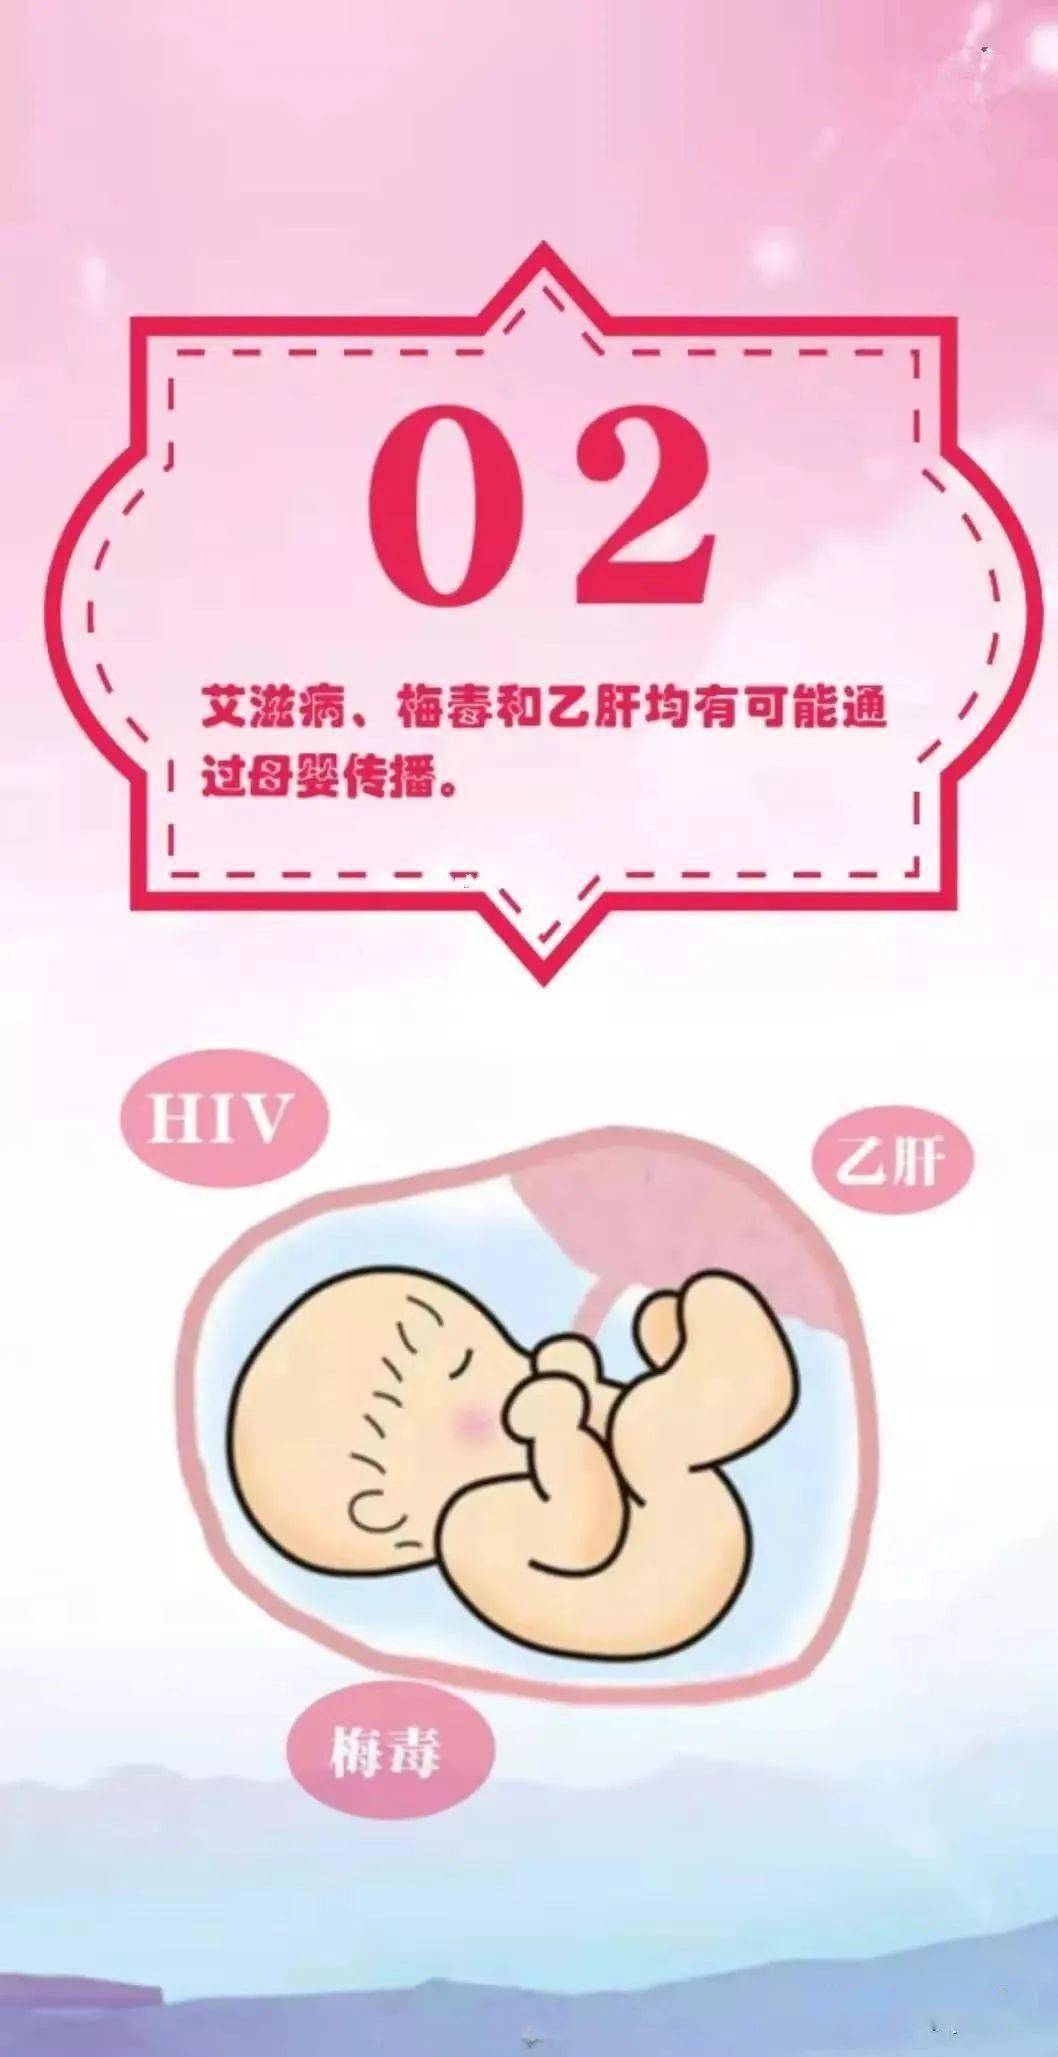 中国预期2025年消除艾滋病,梅毒和乙肝母婴传播